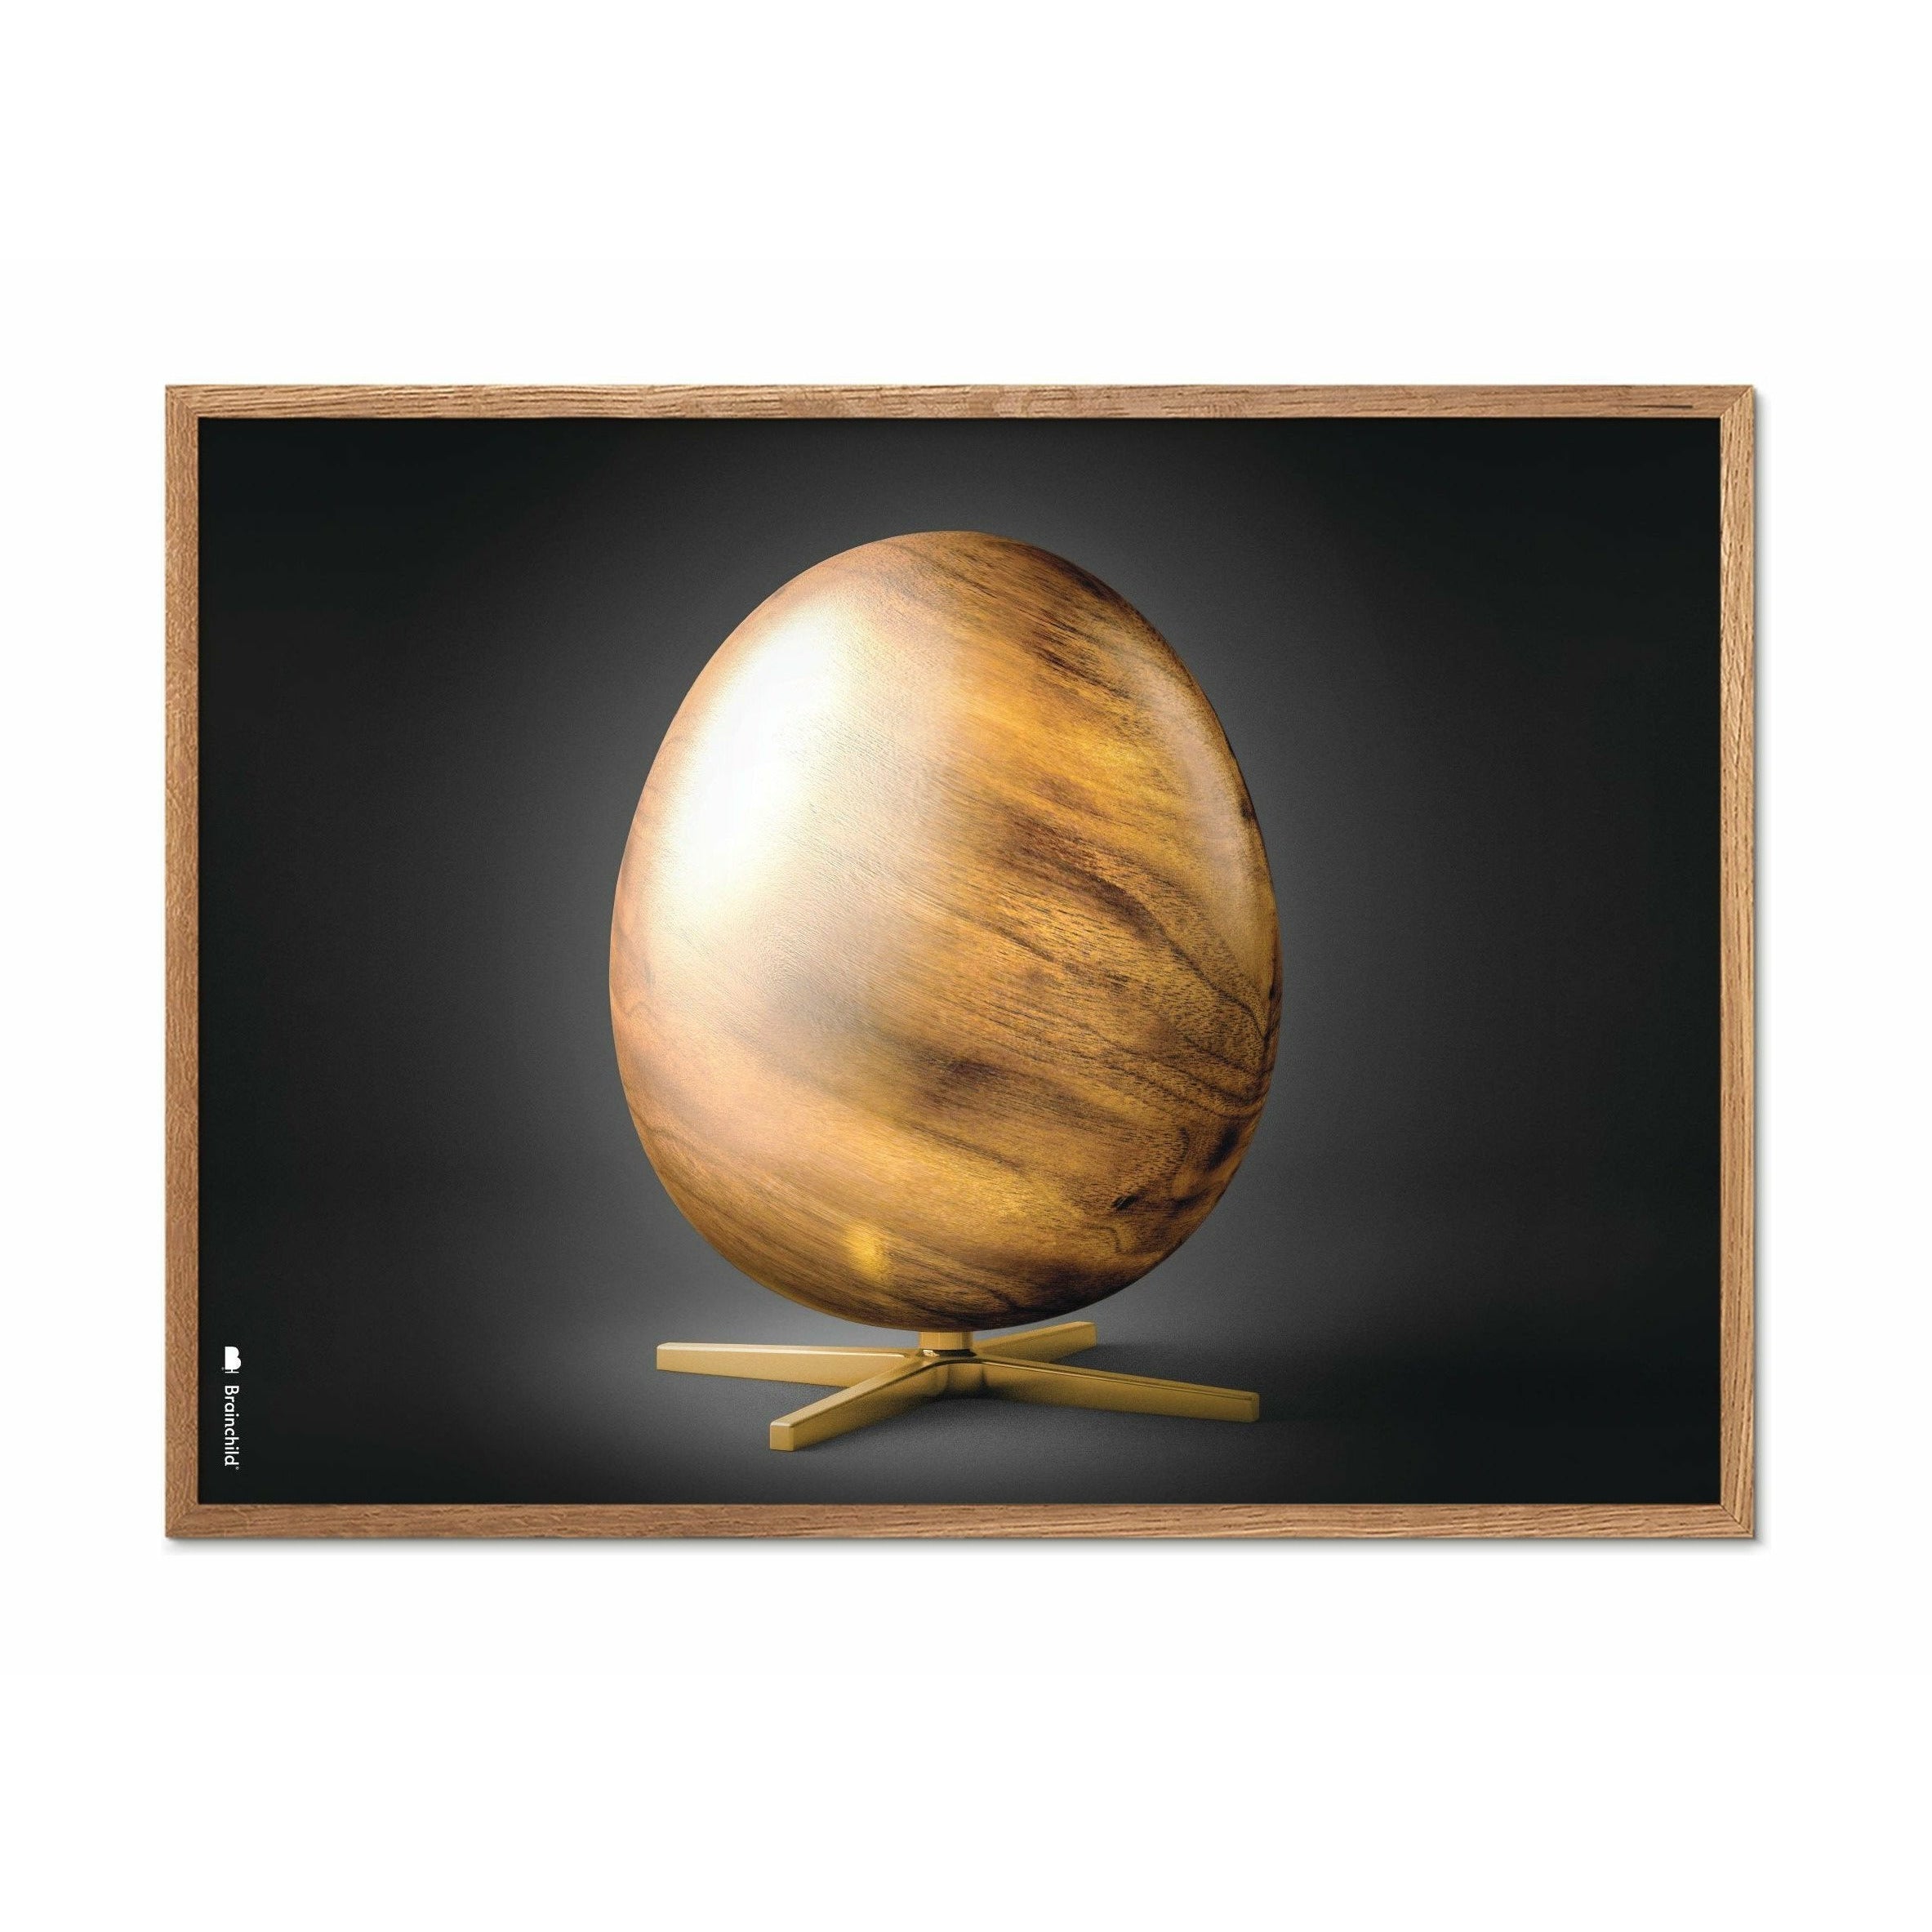 Pomysny plakat z formatu jajowego, rama wykonana z jasnego drewna A5, czarny